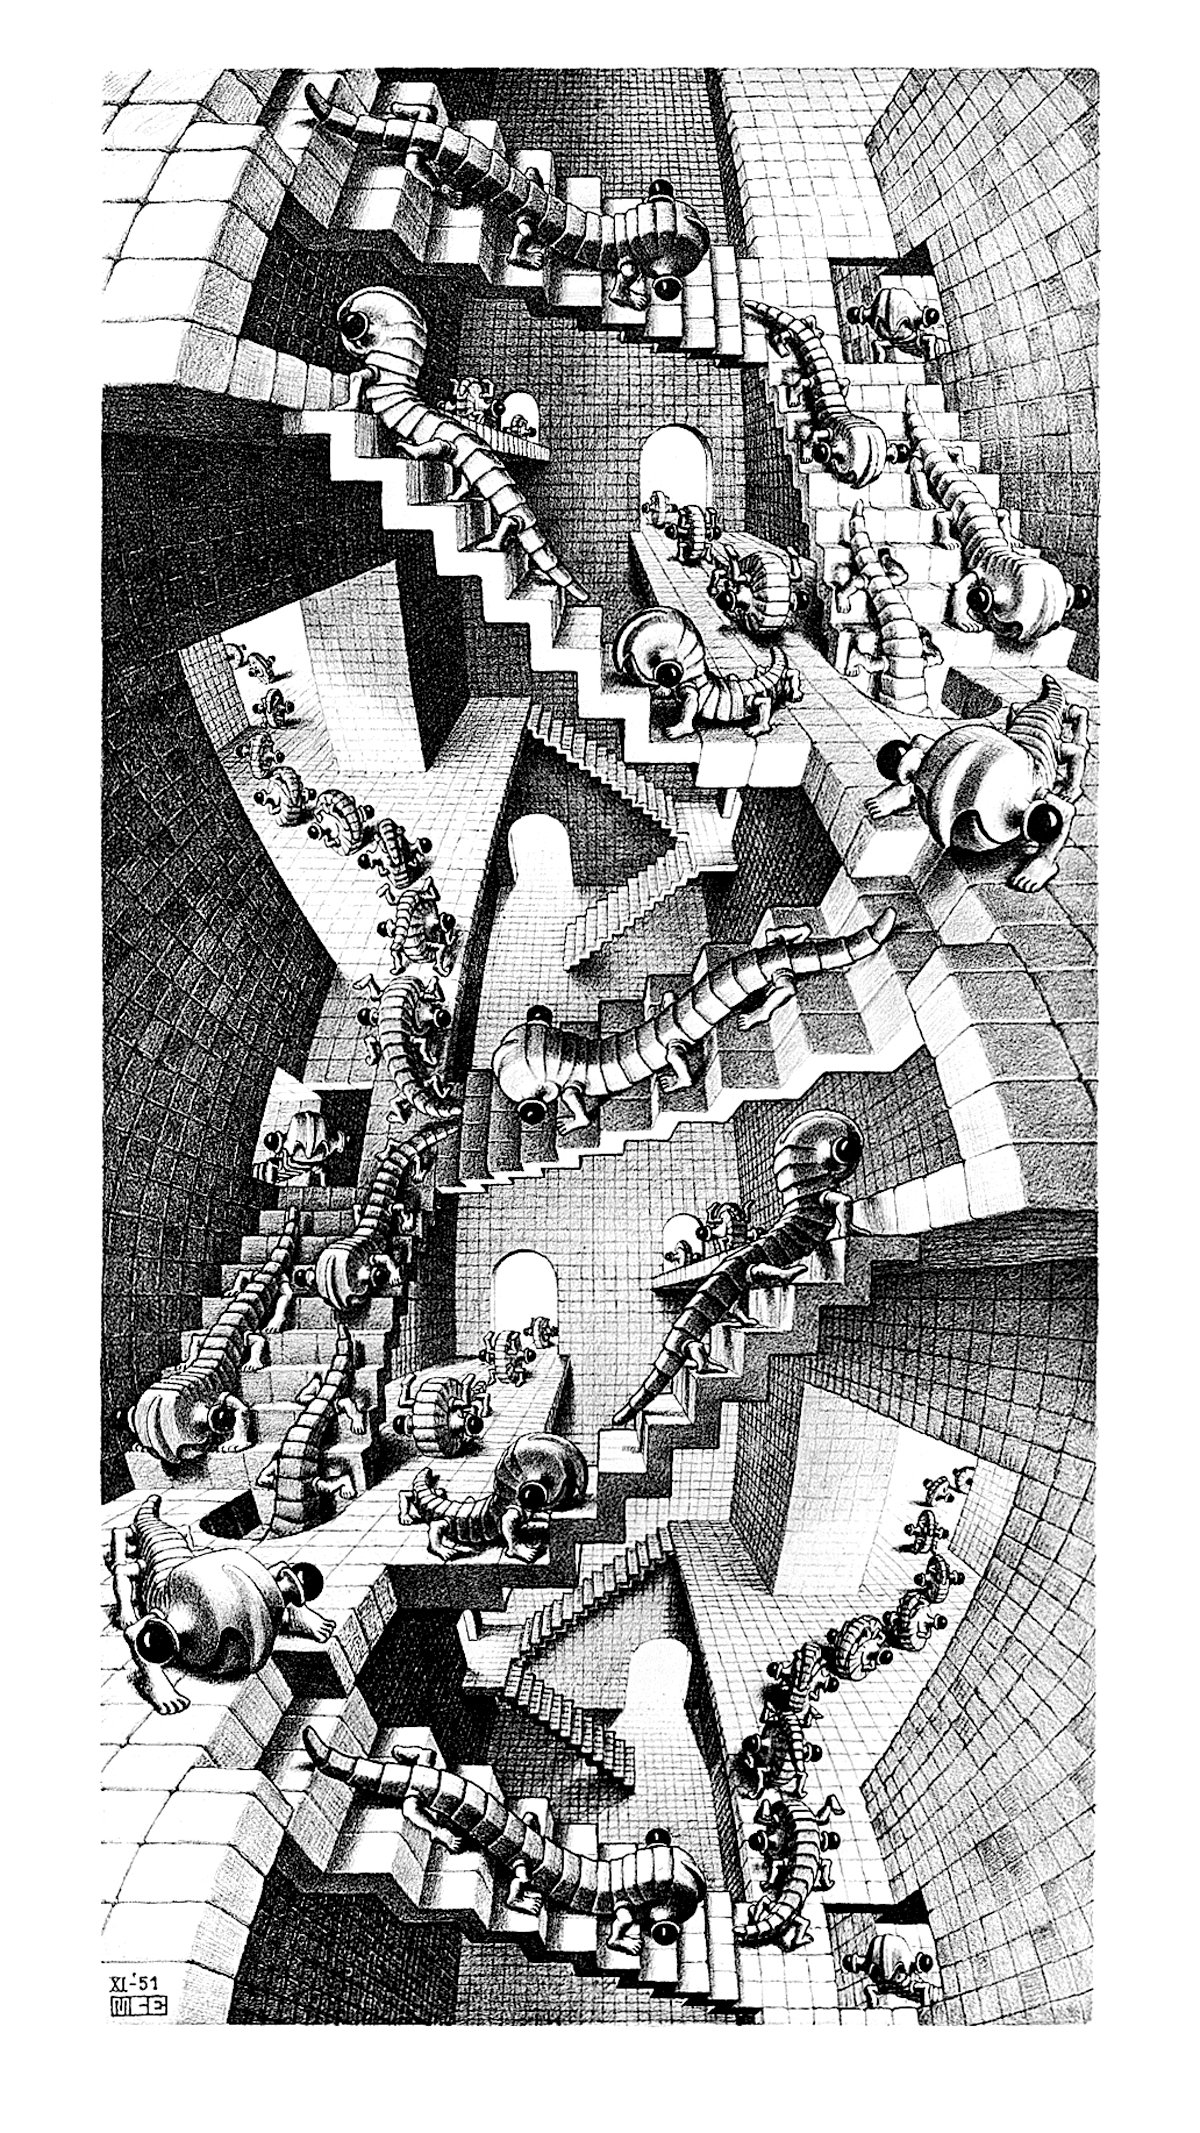 Titre de l‘image : M.c. Escher - Treppenhaus  - (ESE-28)